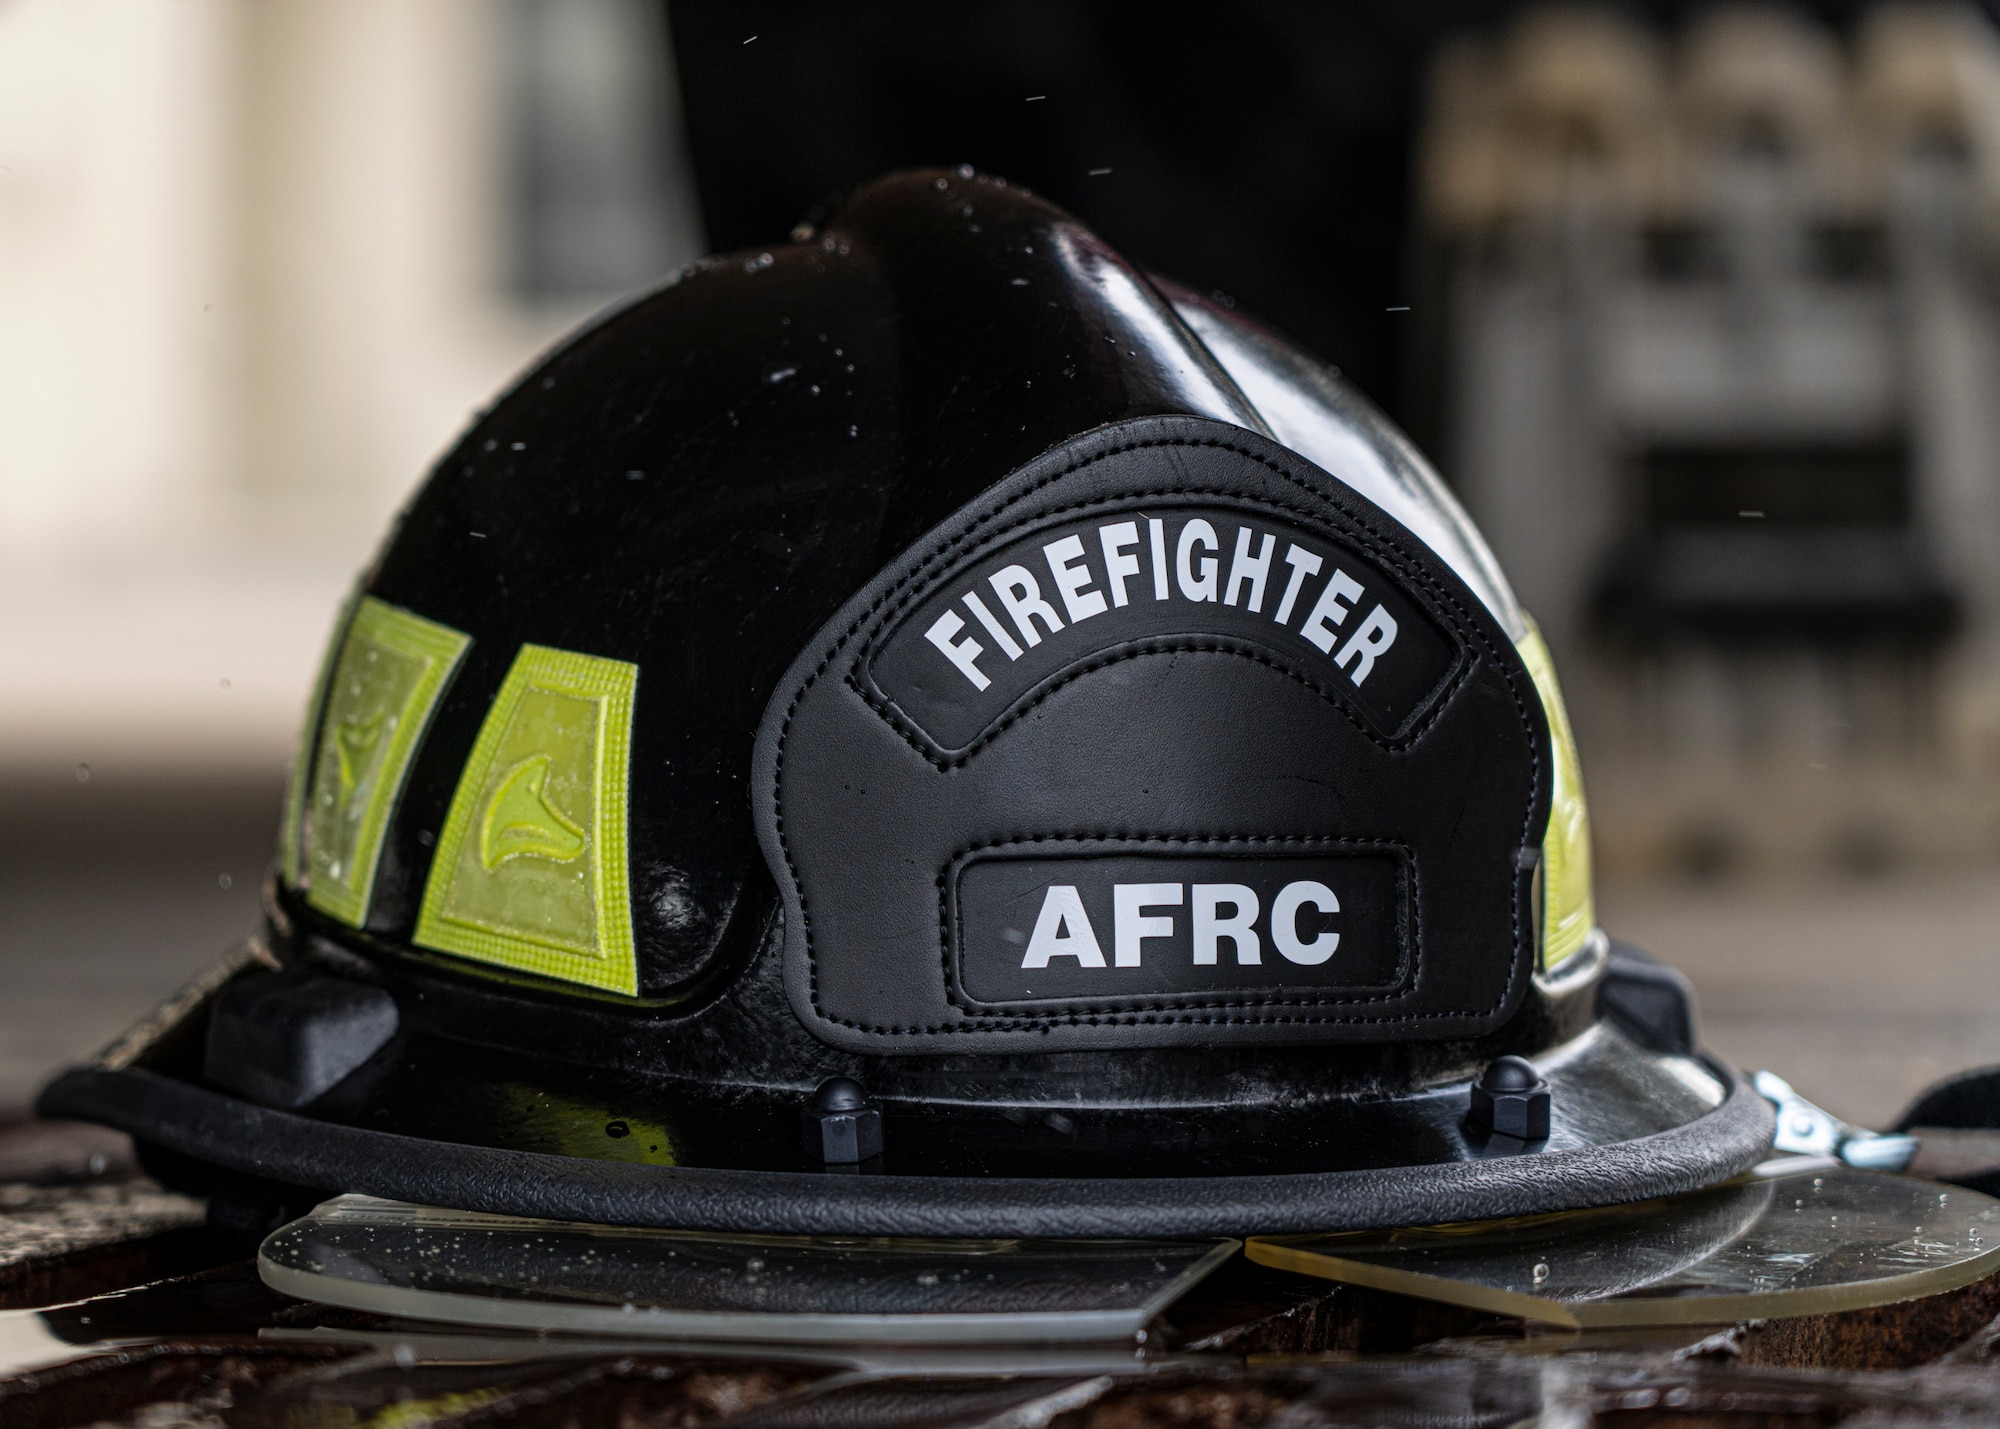 Photo of an AFRC firefighter helmet